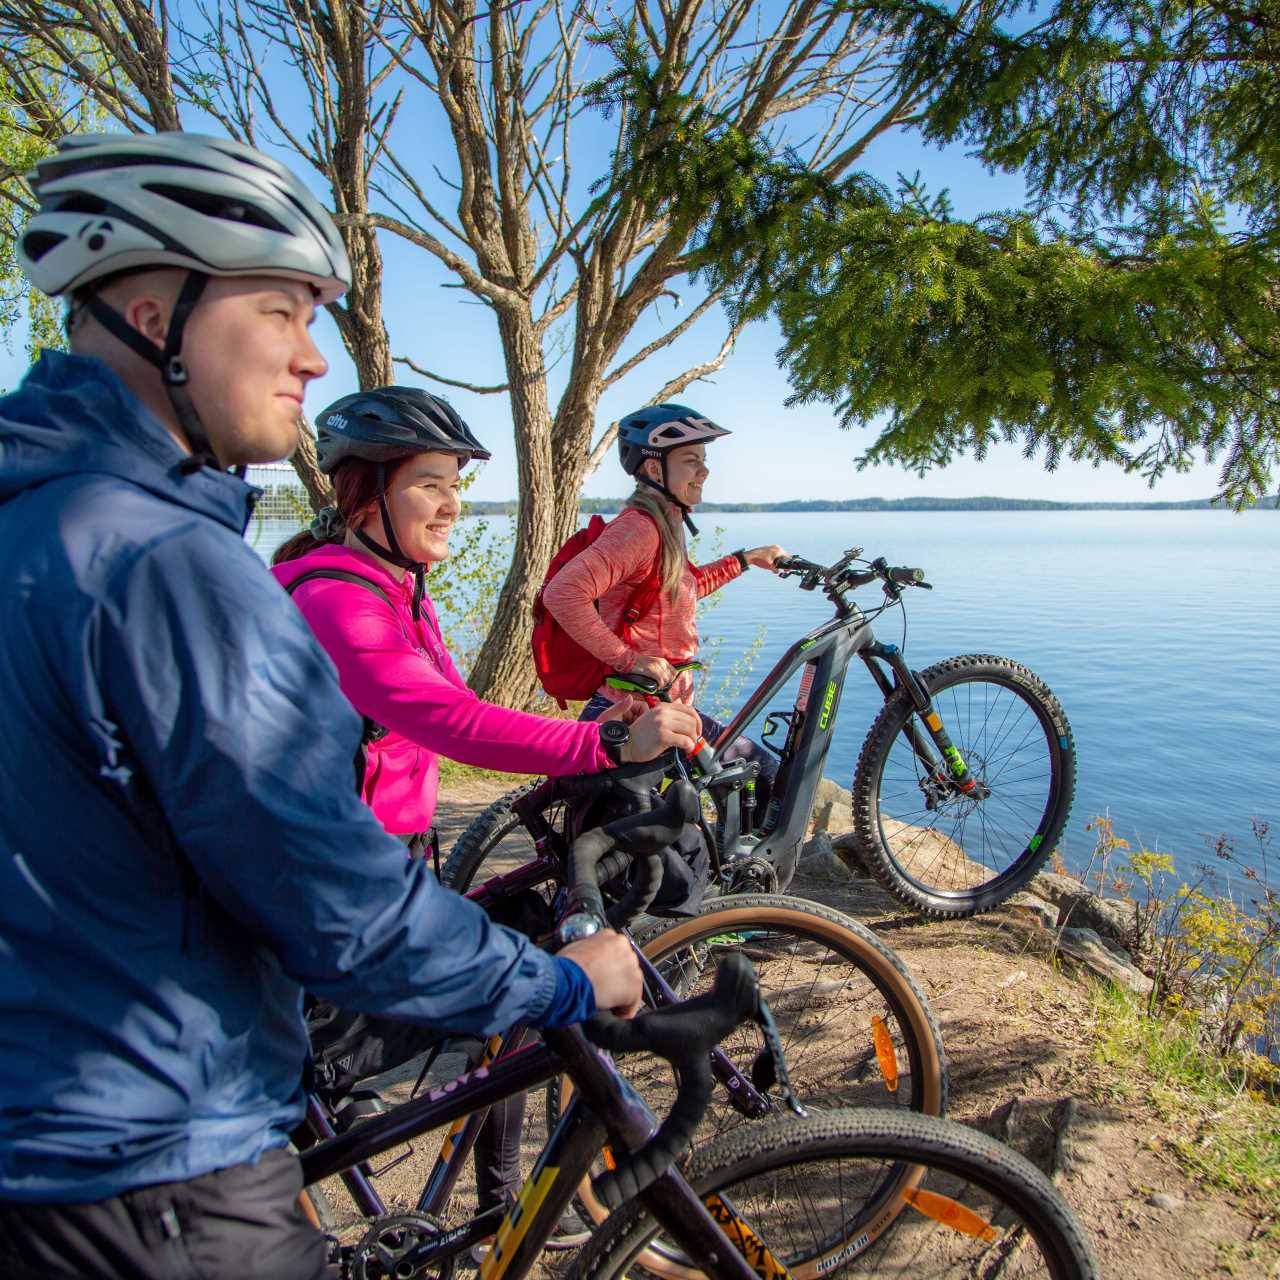 Kolme pyöräilijää katsomassa järvimaisemaa.